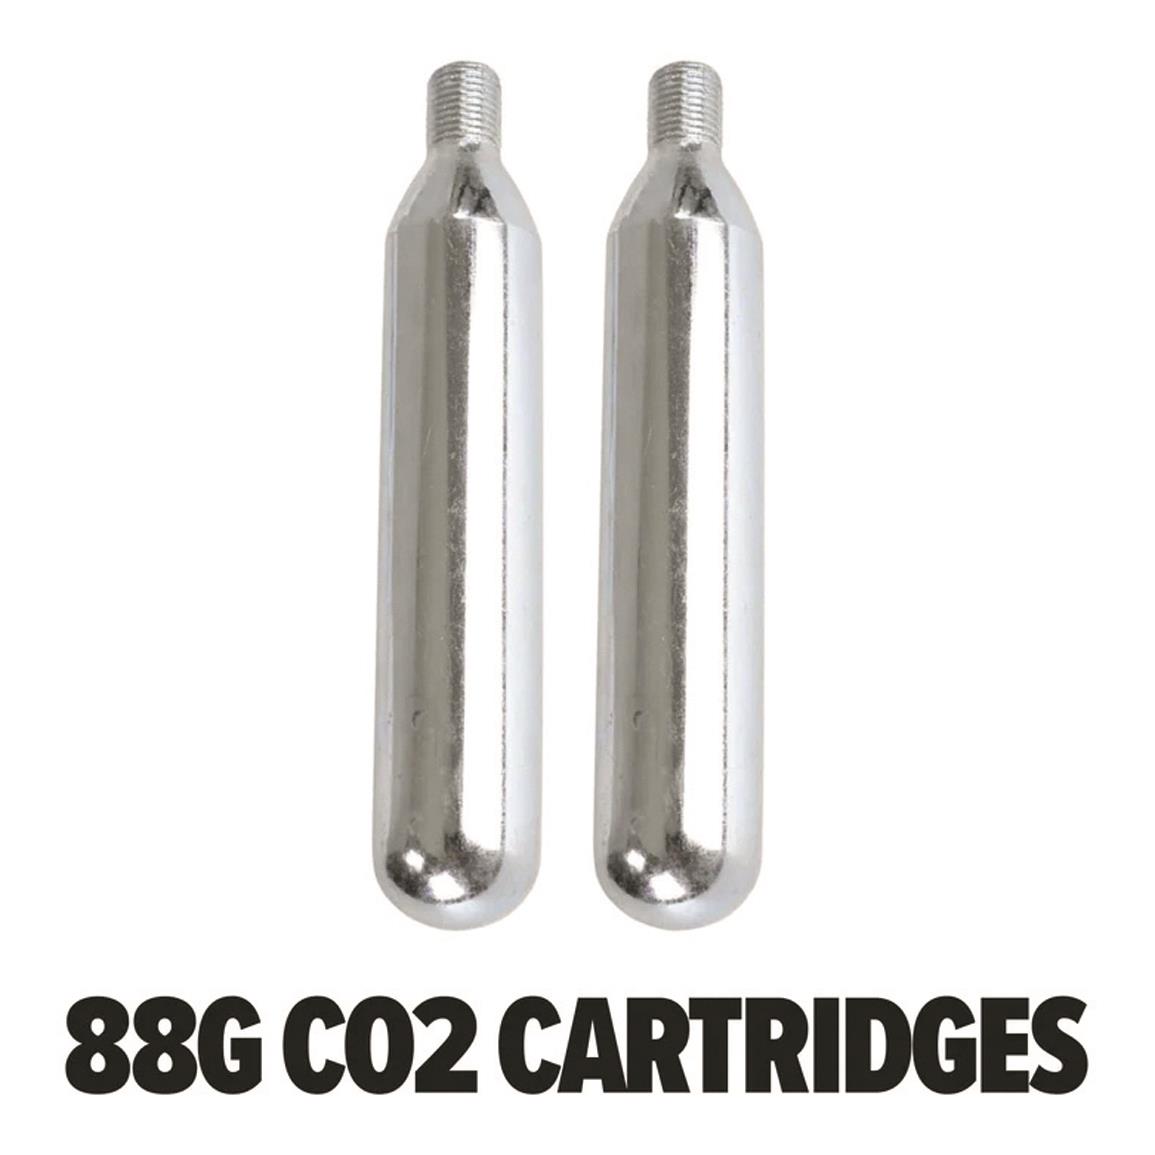 (2) 88g CO2 cartridges